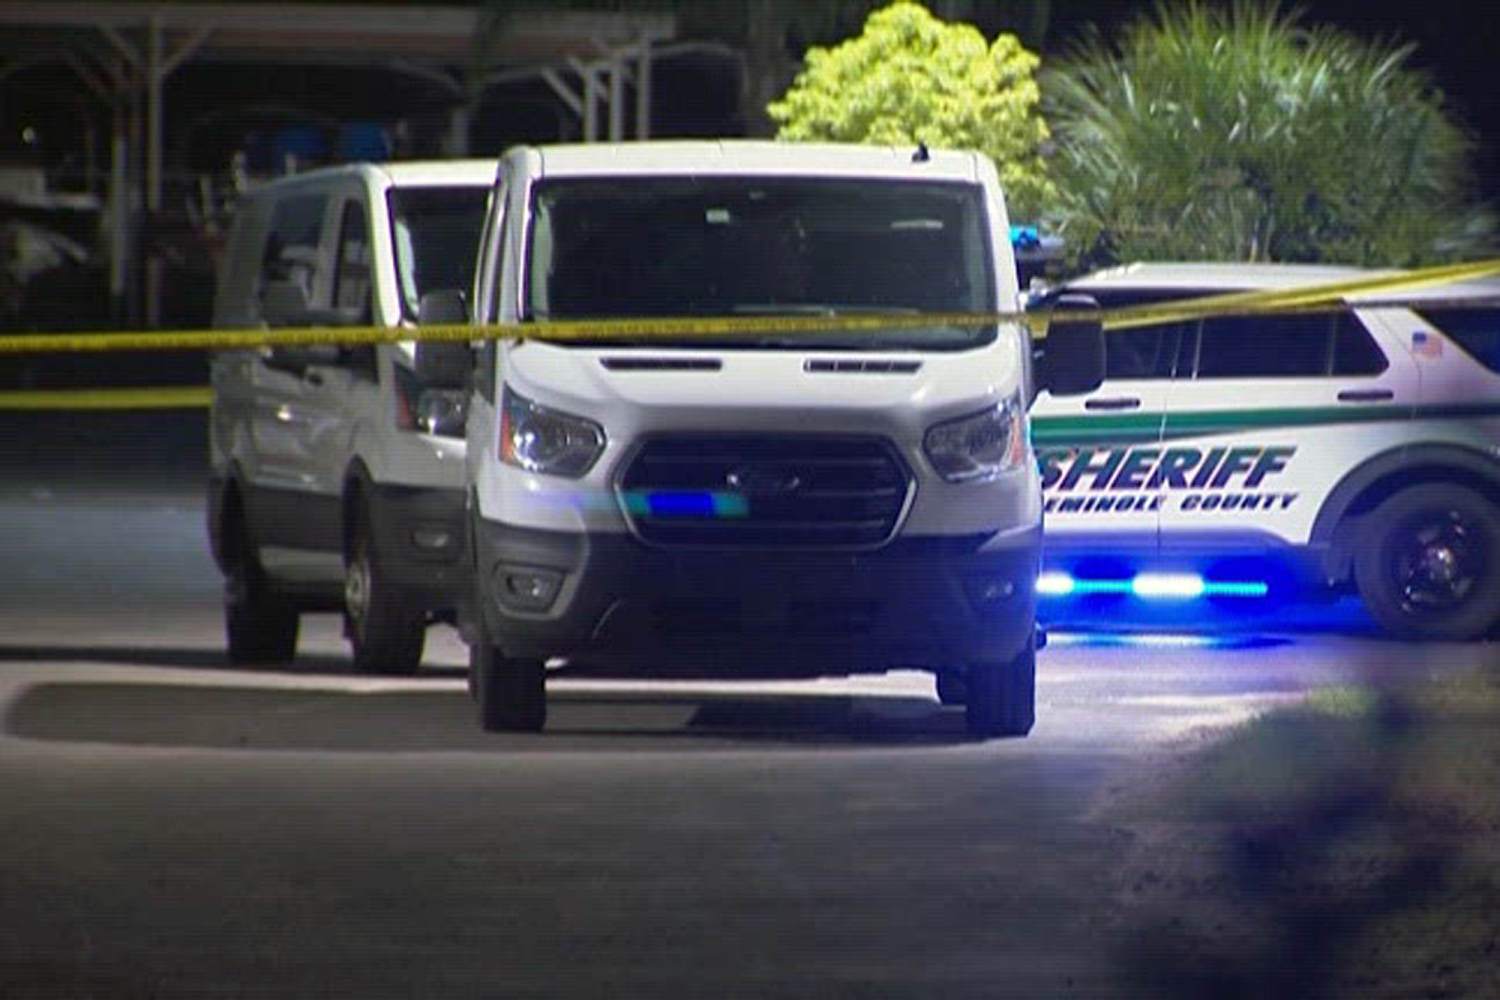 10 shot by teen gunman at Florida party venue, police say